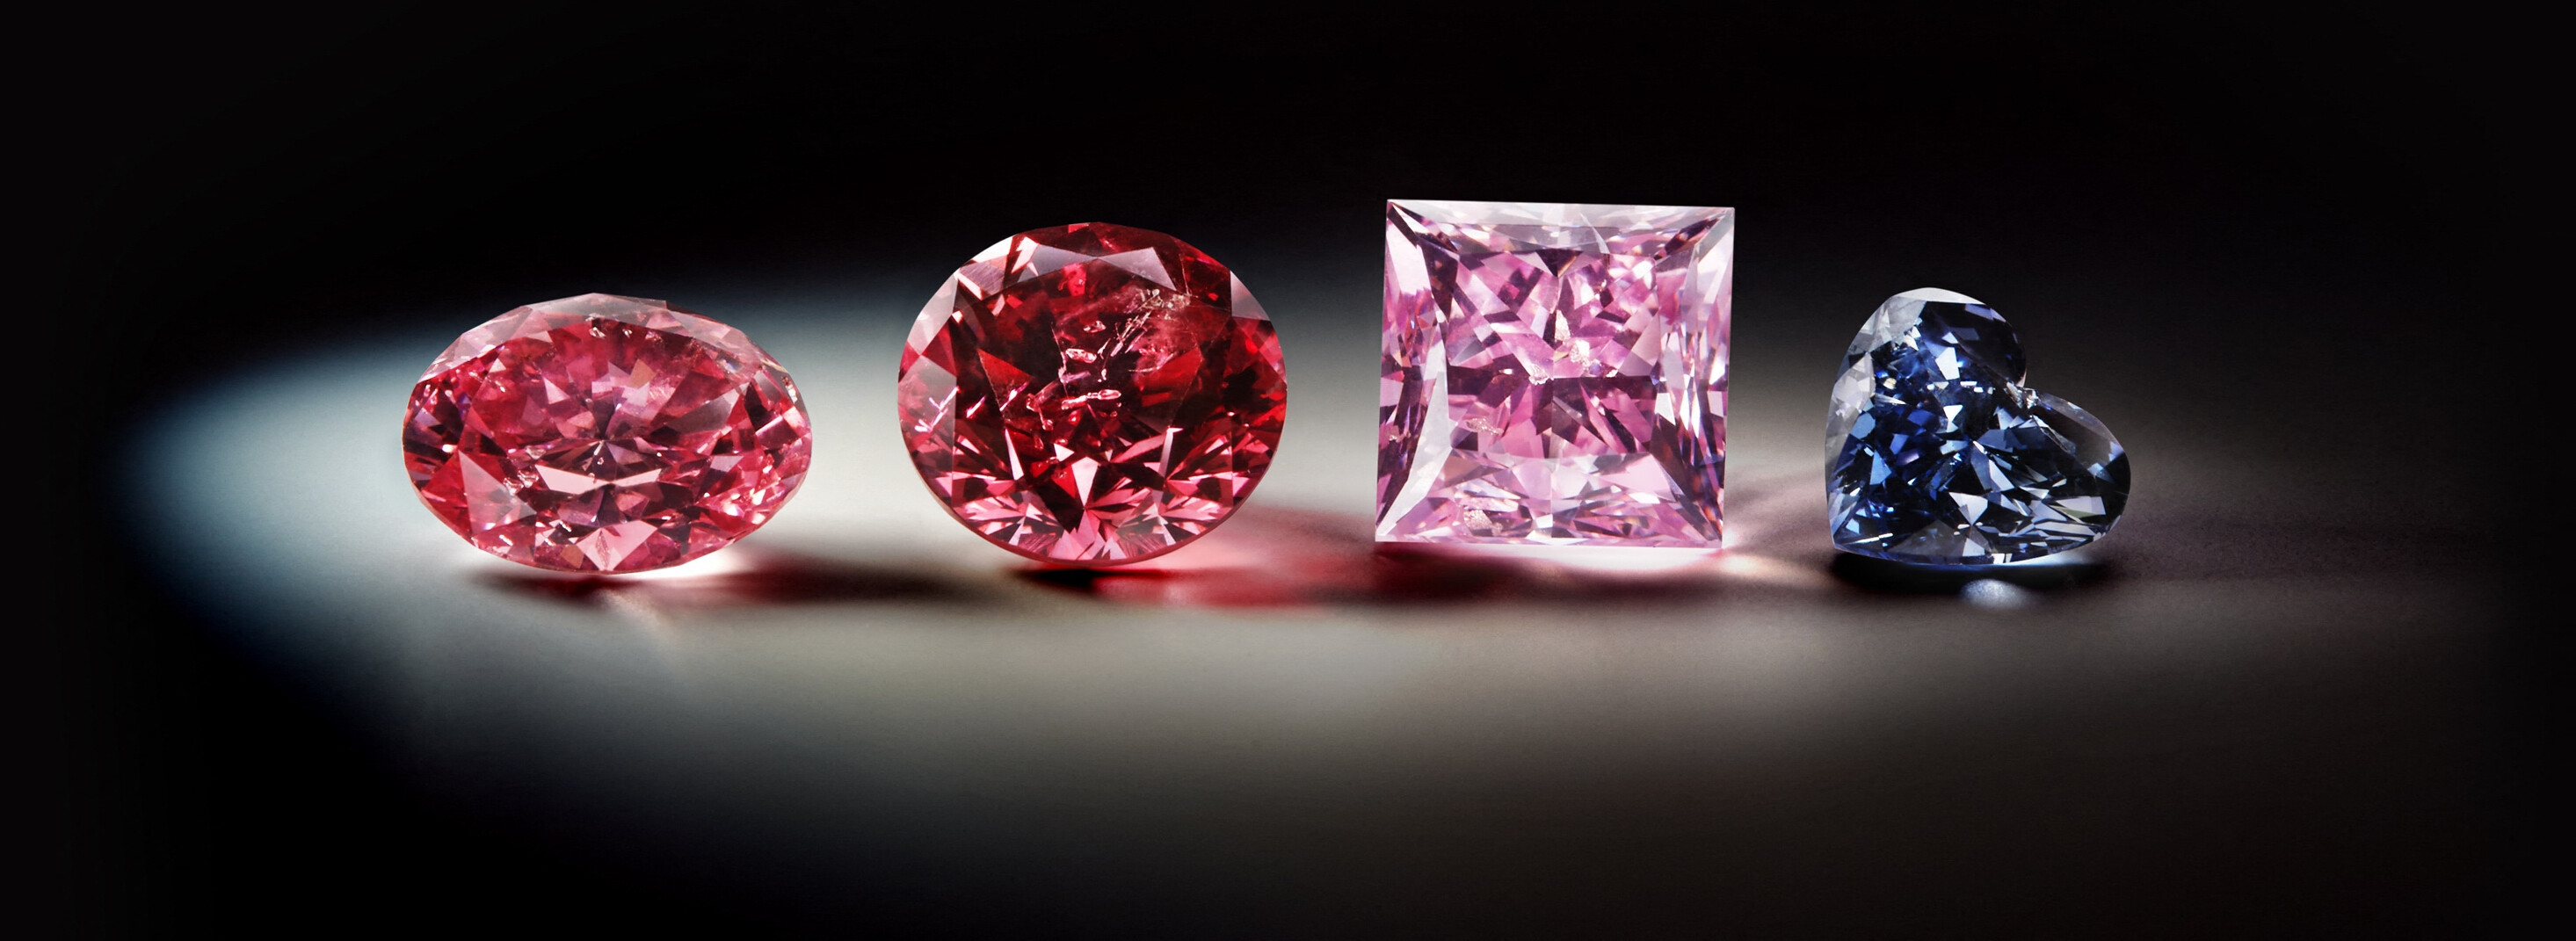 Los científicos descubren un ingrediente faltante en raros diamantes rosas